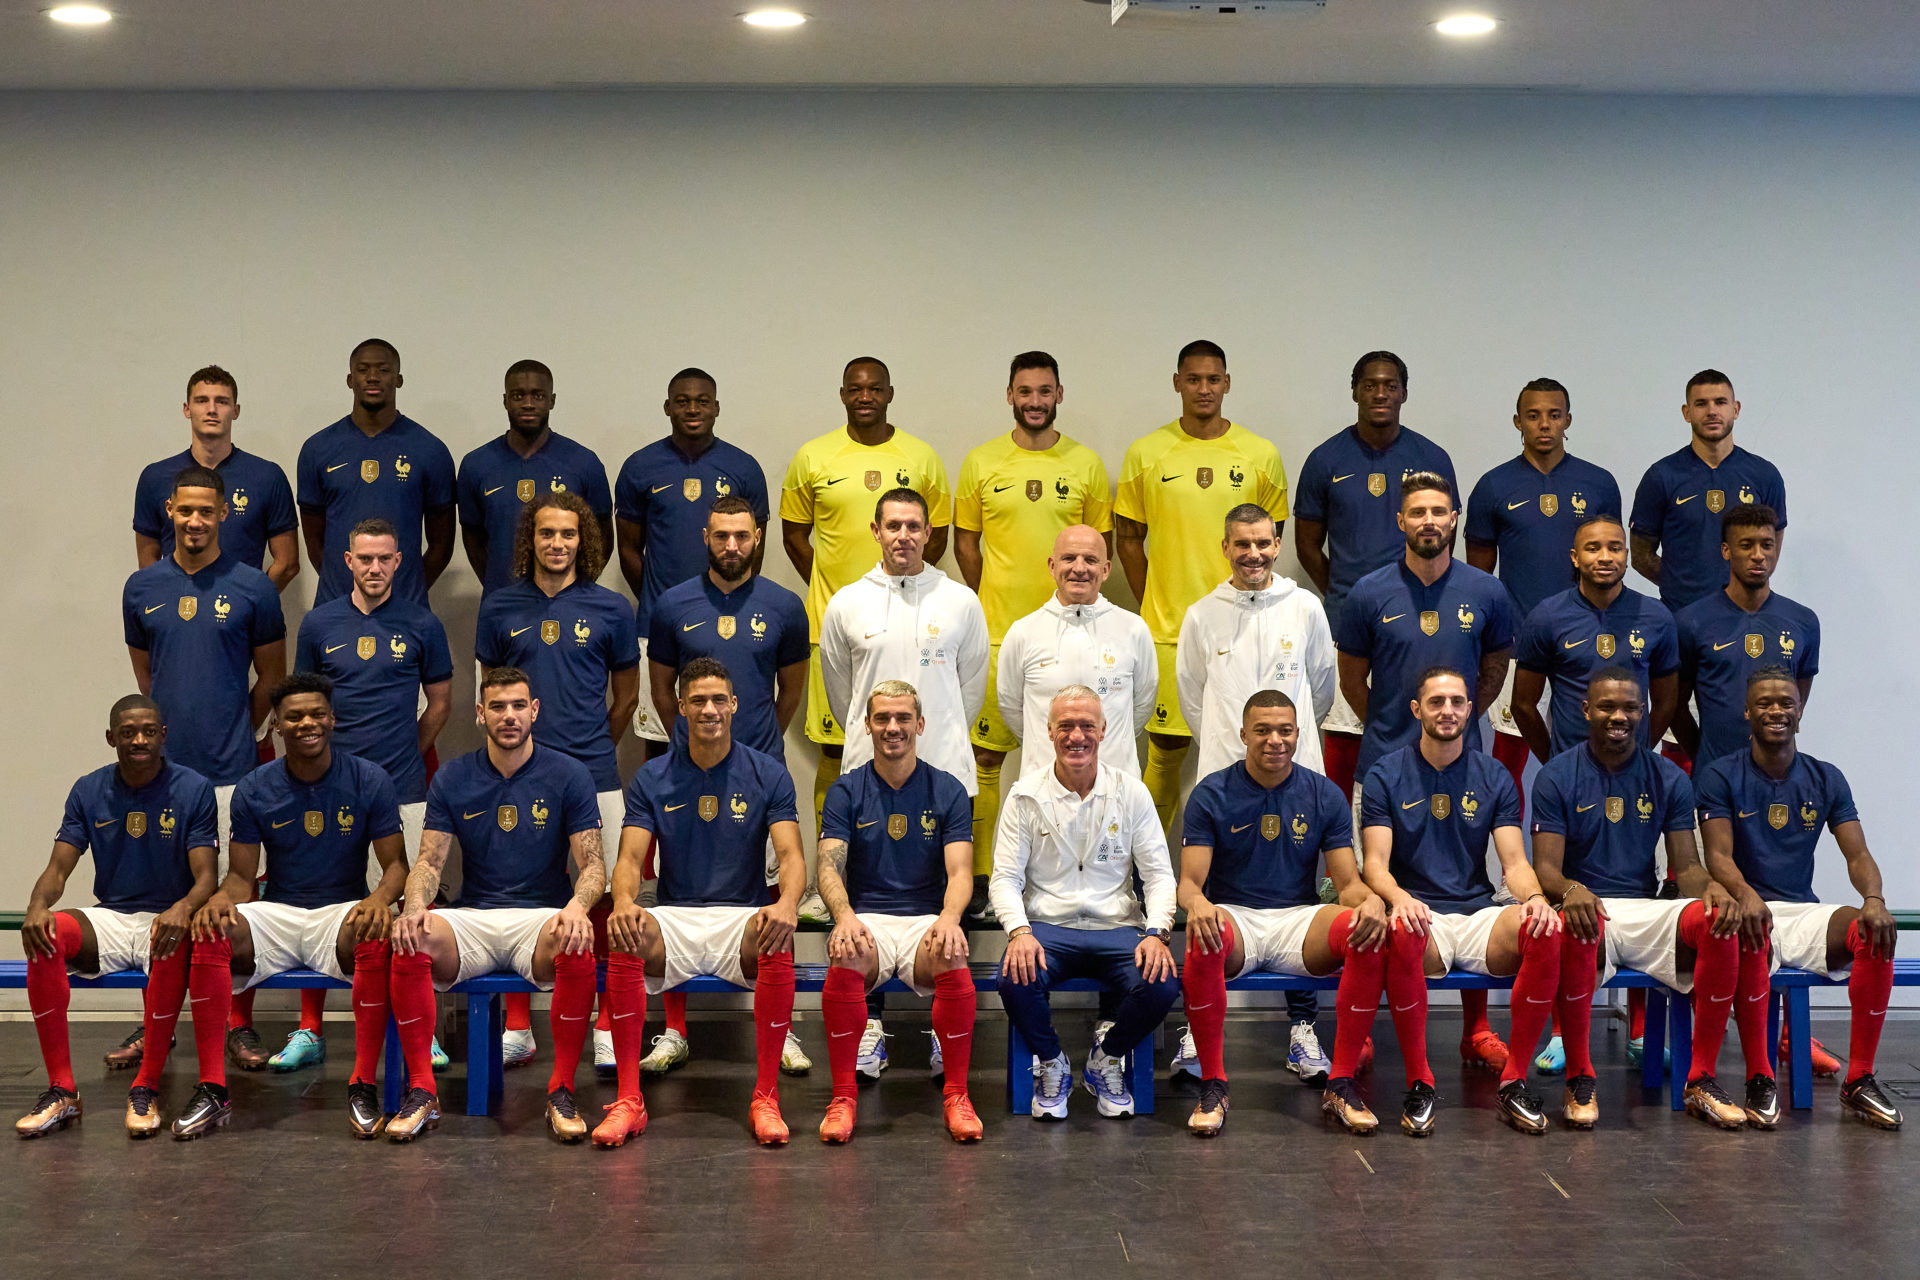 SOCCER: NOV 15 French Soccer National Team